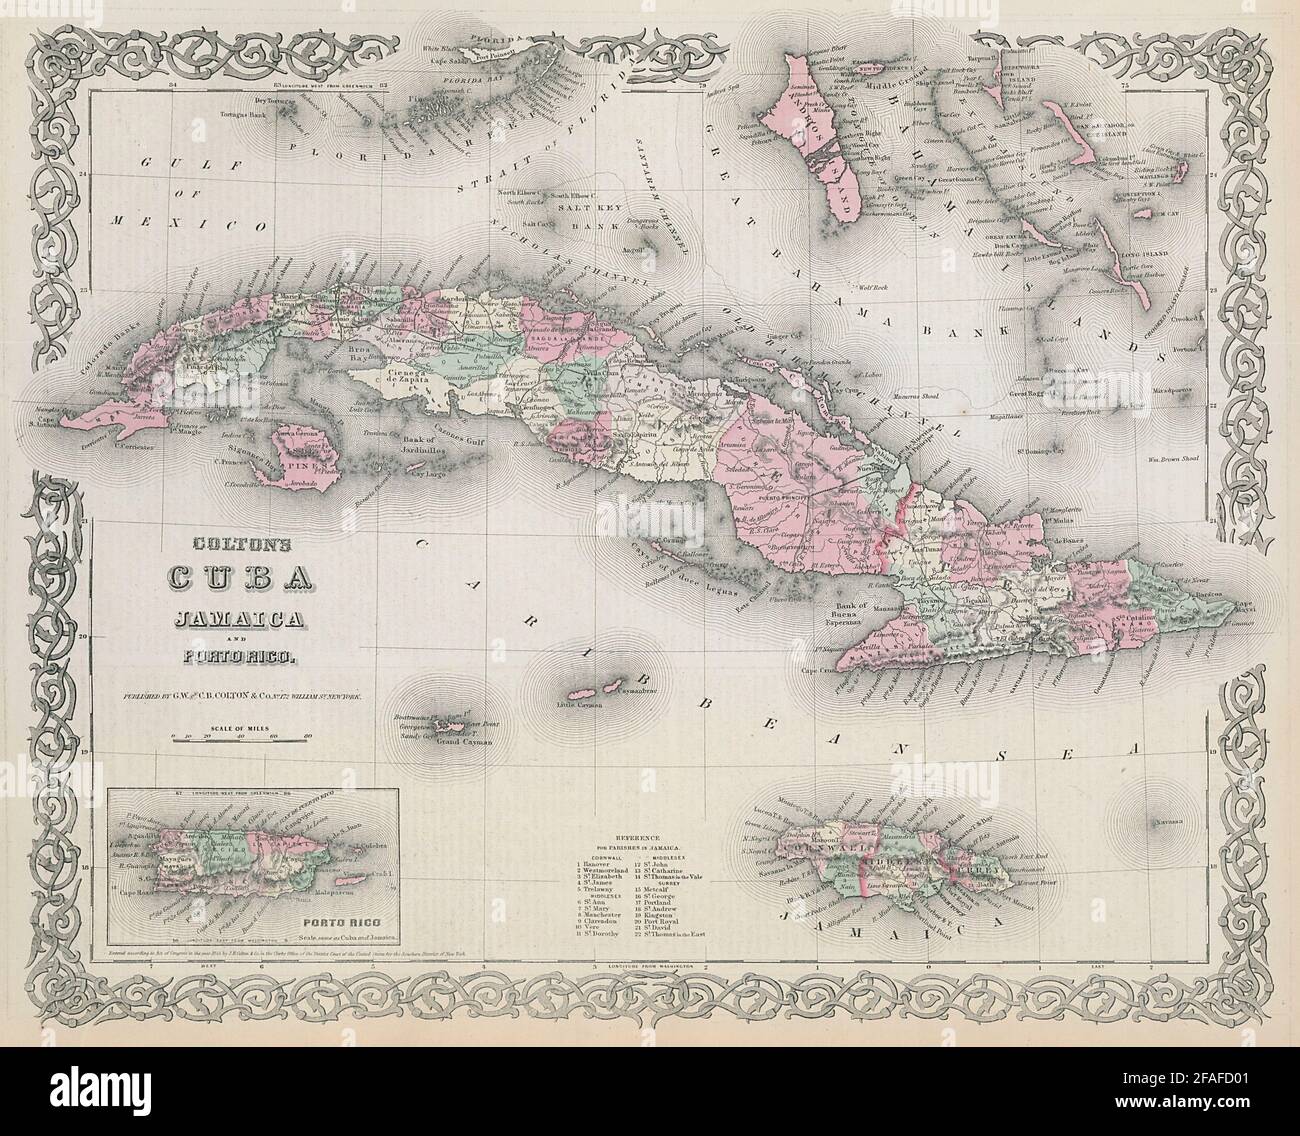 Colton's Cuba, Jamaica and Porto Rico. Puerto Rico. Bahamas 1869 old map Stock Photo